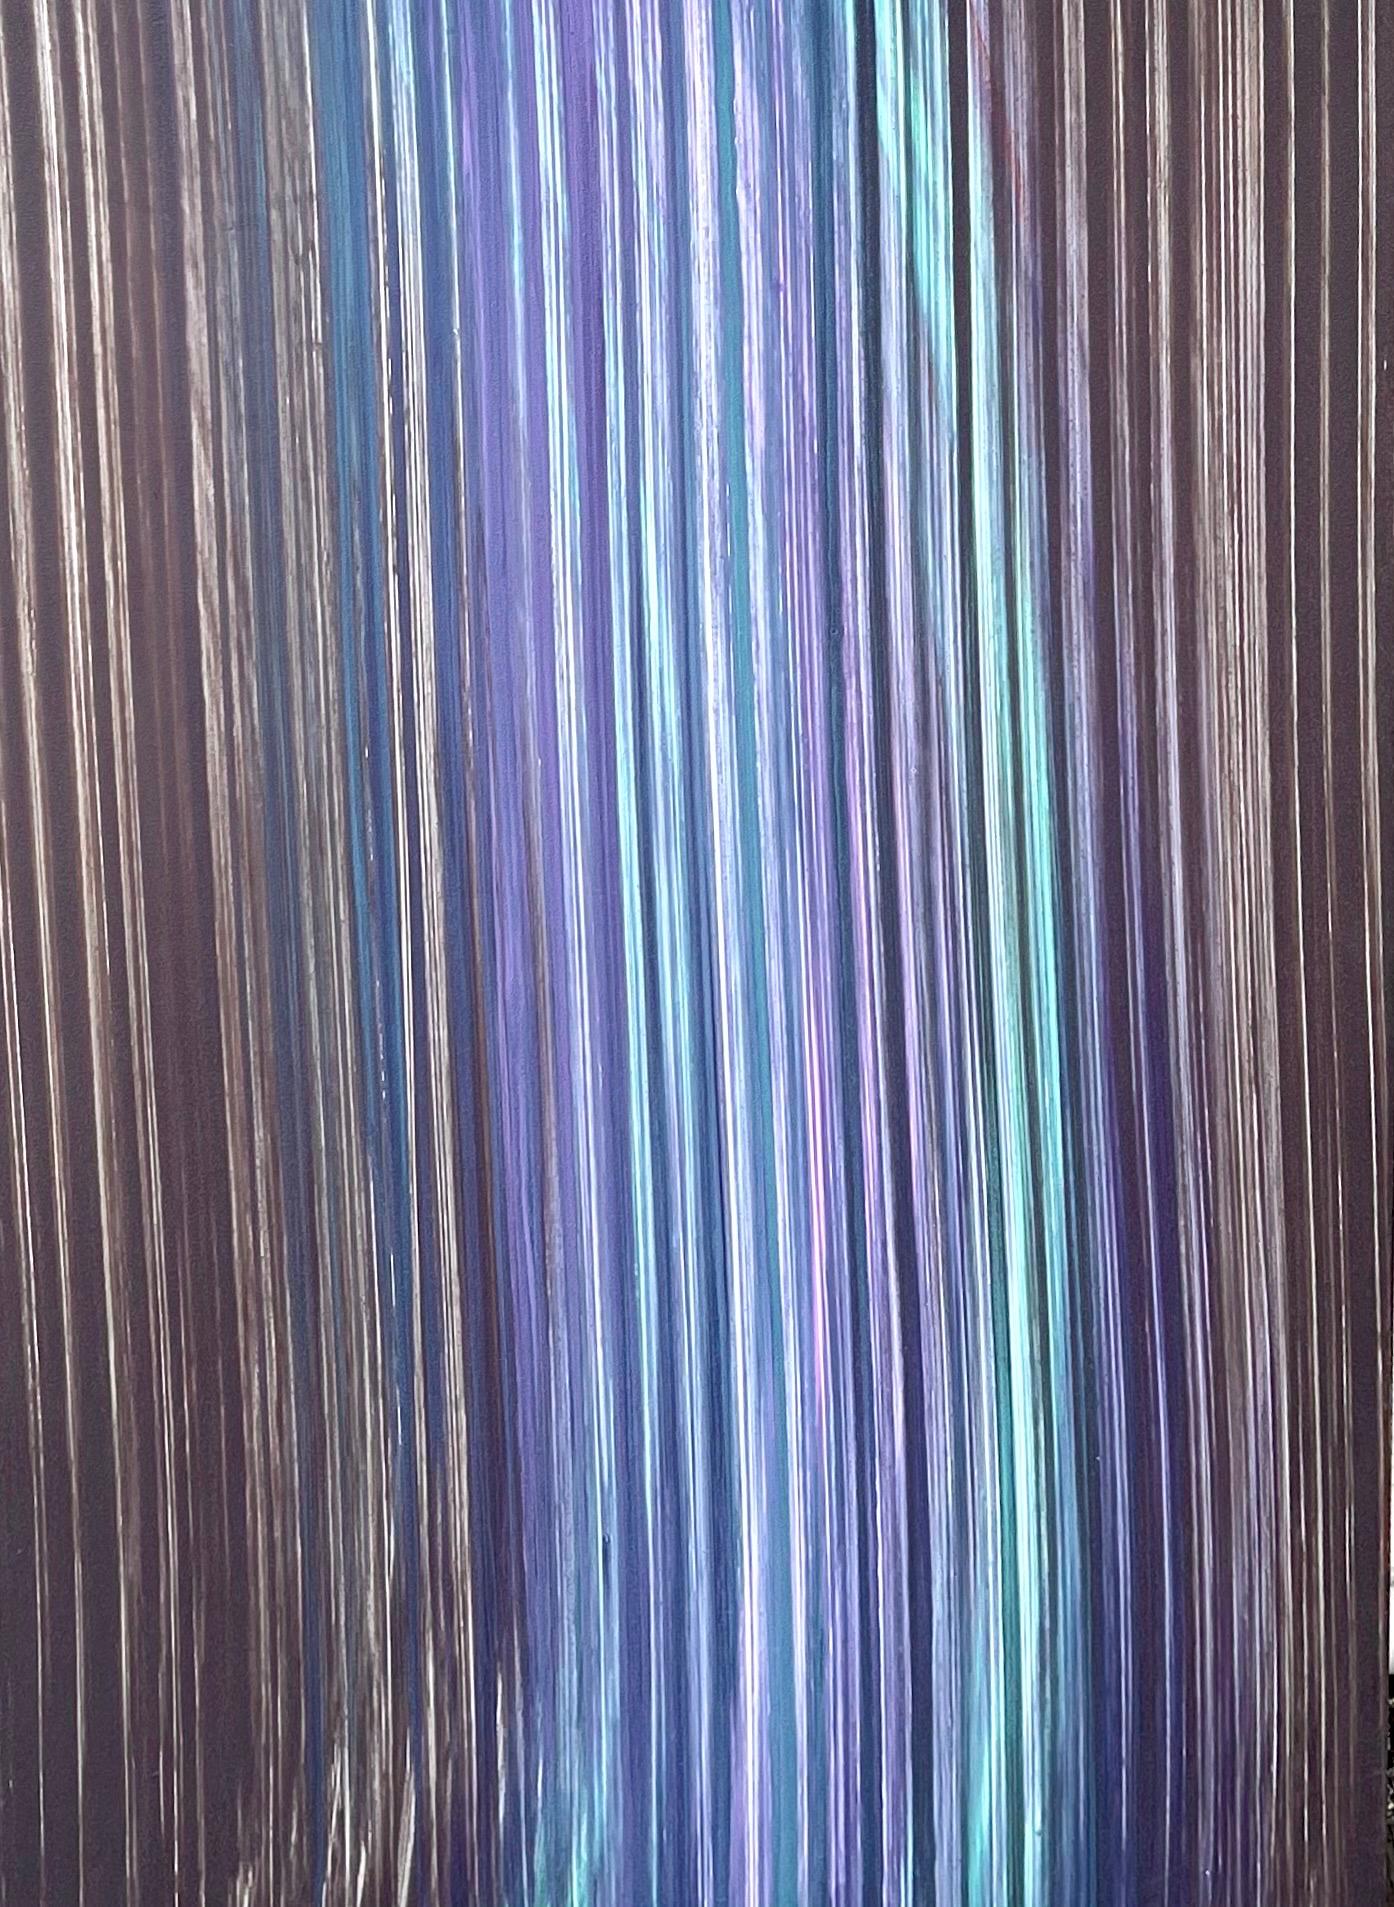 Gina Medcalf (Britin, 1941-)
"Flacher Boden 2", 2008 
(Seichtes Braun)
Acryl auf Leinwand
Rückseitig handsigniert, datiert und betitelt. 
27 X 18
Dieses Gemälde ist nicht gerahmt
Abstrakte Polychromie mit wellenförmigen vertikalen Linien in einer